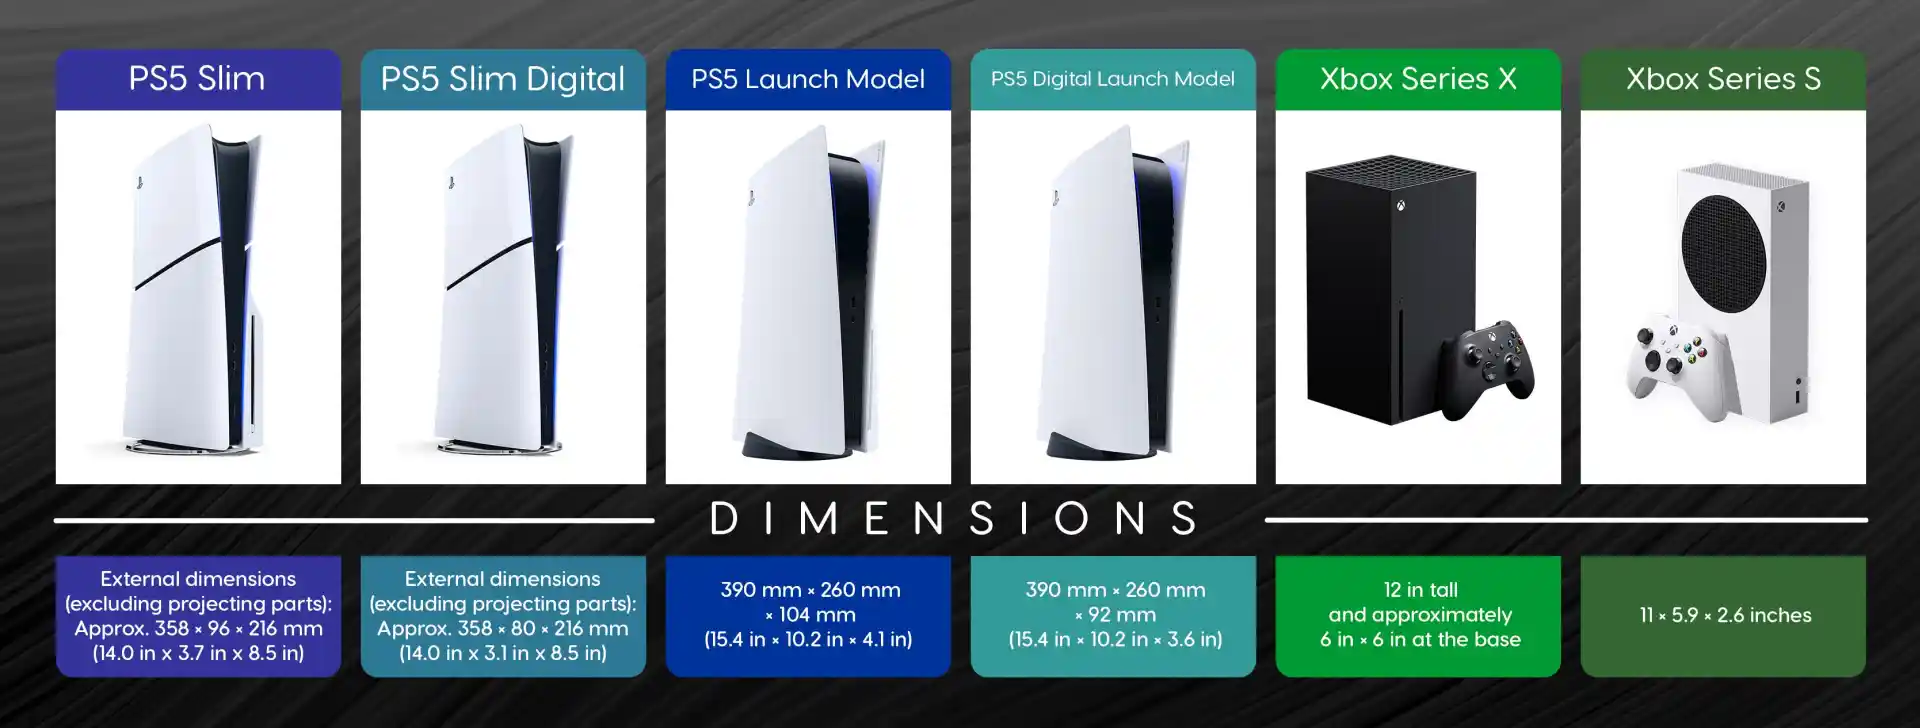 Quanto è grande la PS5 Slim? Le dimensioni confrontate con tutte le console current-gen e last-gen